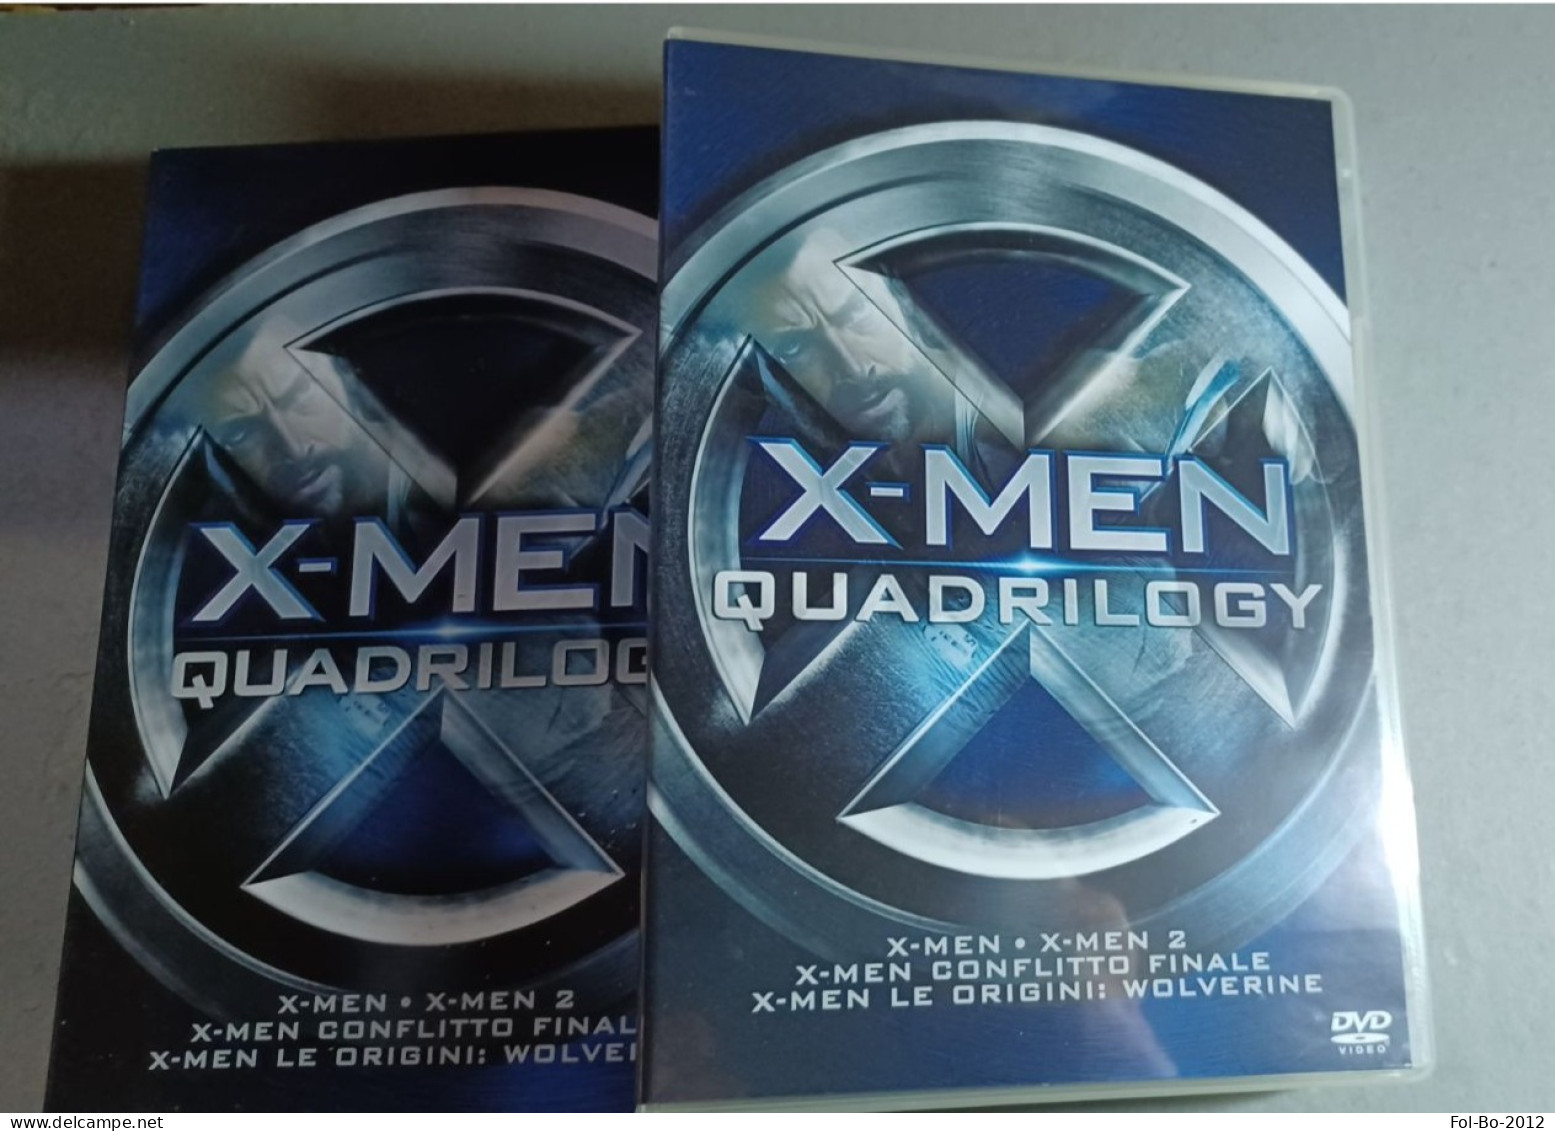 X-MEN Quadrilogy DVD.MARVEL - Fantasy